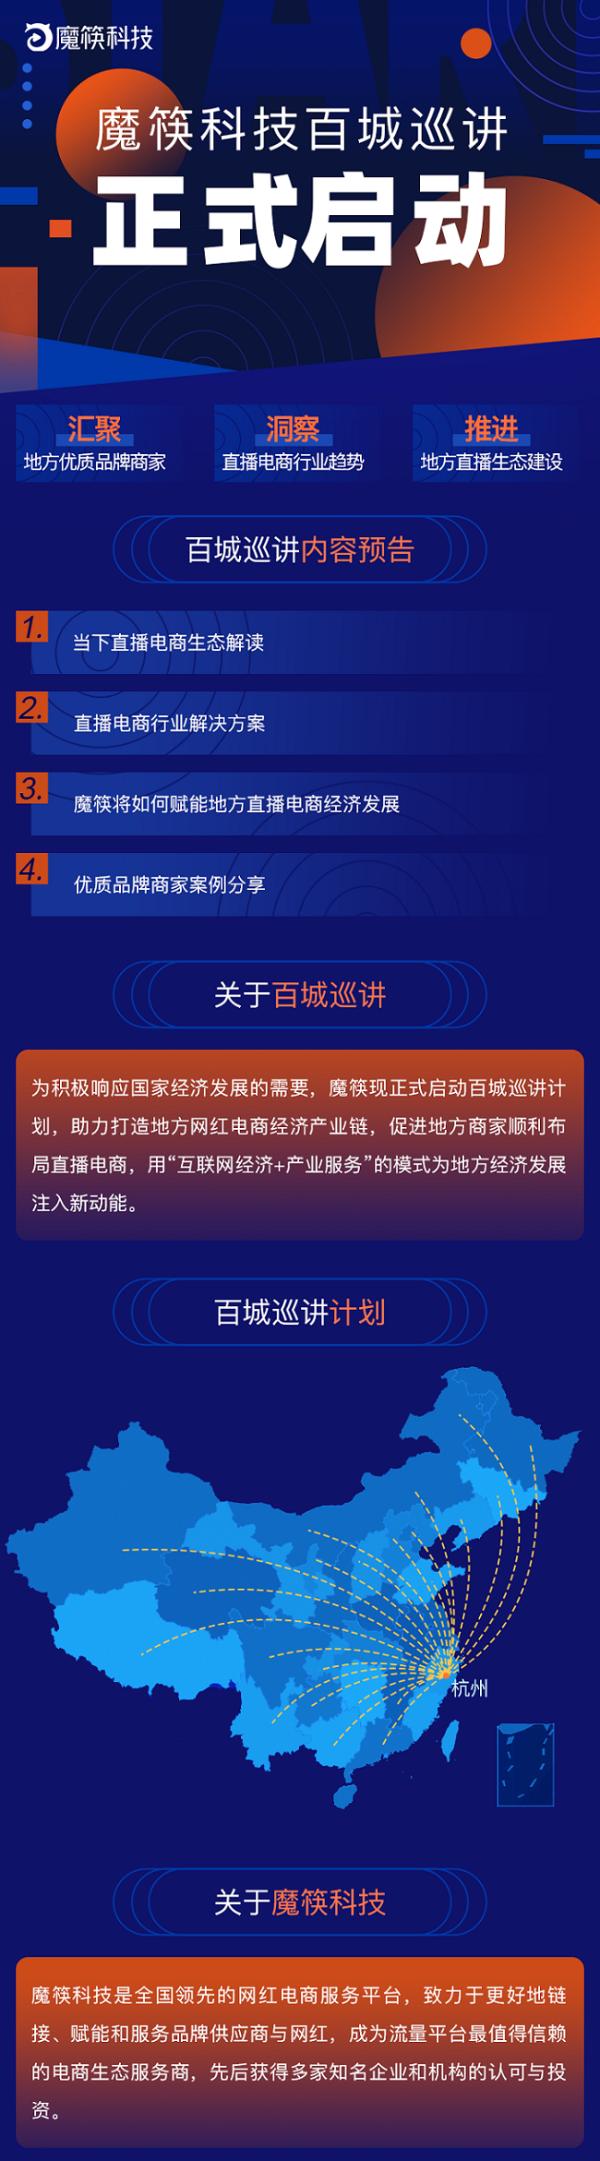 魔筷科技“百城巡讲”将在郑州正式启动,共迎河南“直播电商” 时代